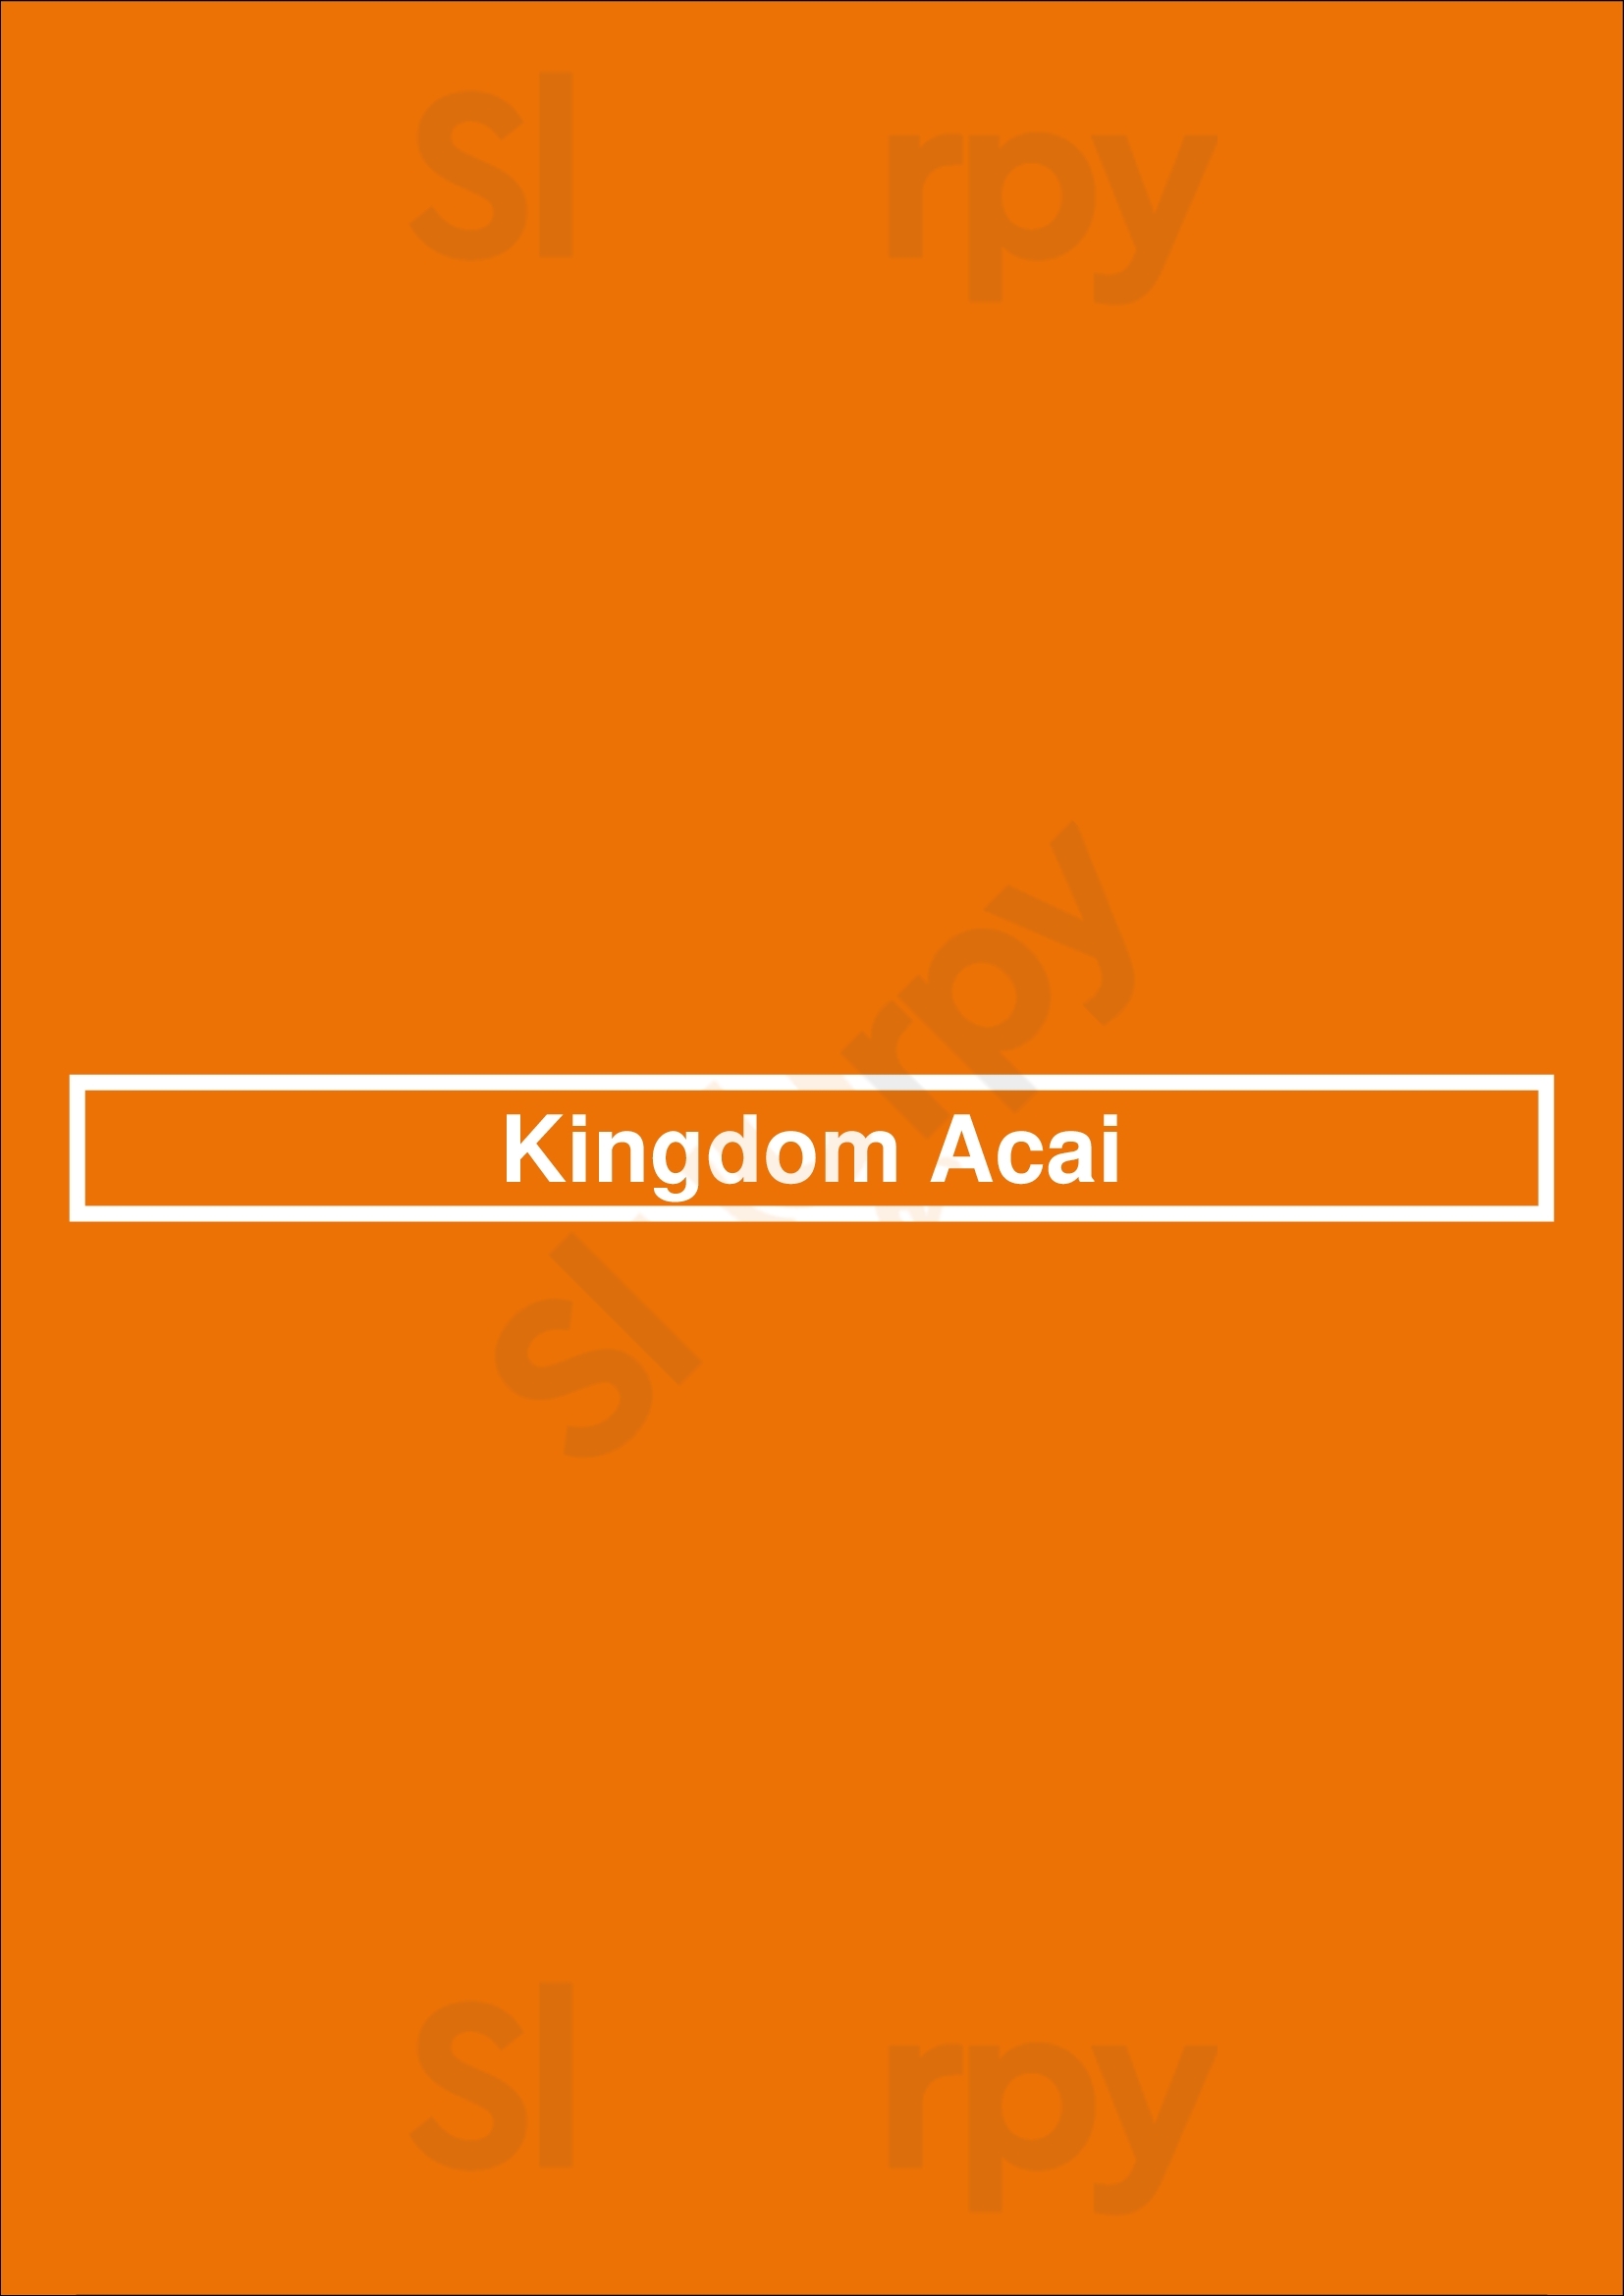 Kingdom Acai Orlando Menu - 1